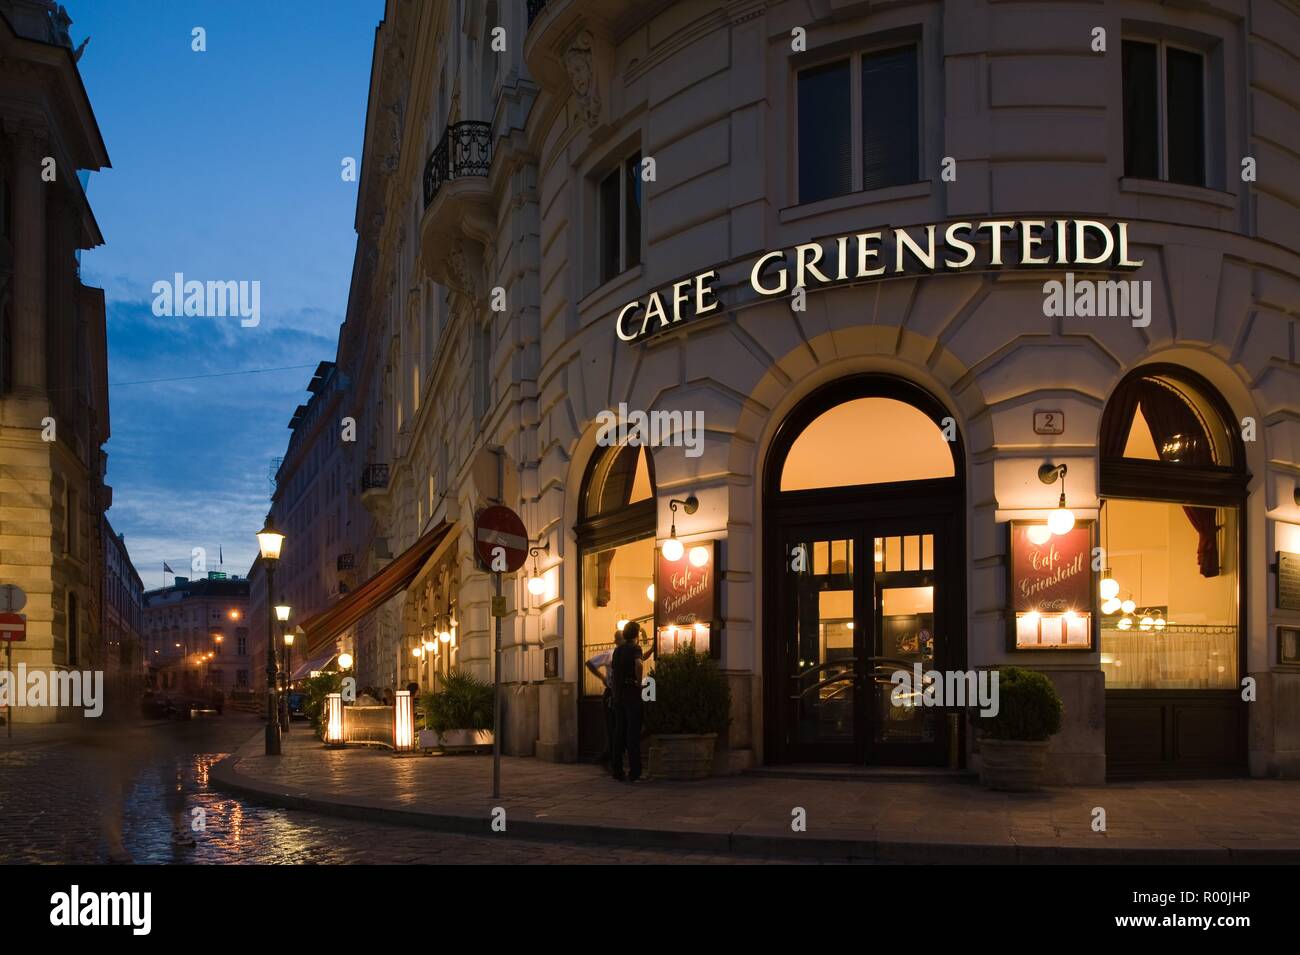 Wien, Cafe Griensteidl (inzwischen geschlossen) - Vienna, Cafe Griensteidl (now closed) Stock Photo